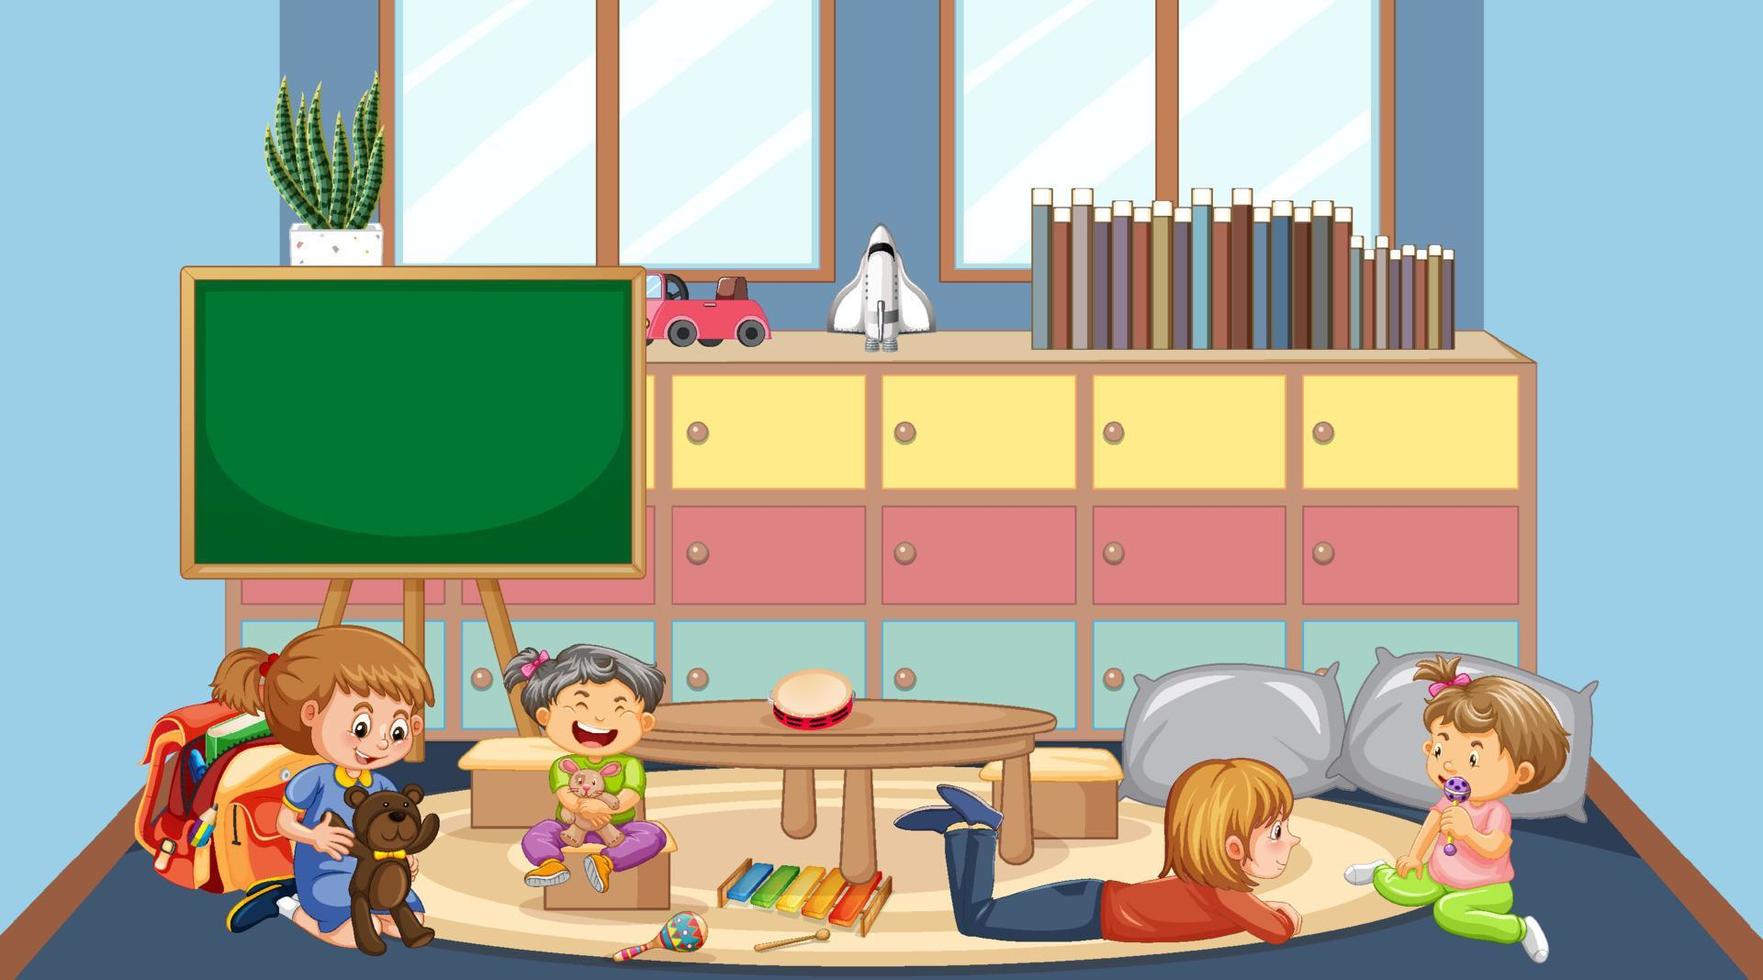 scène van klaslokaal met spelende kinderen vector